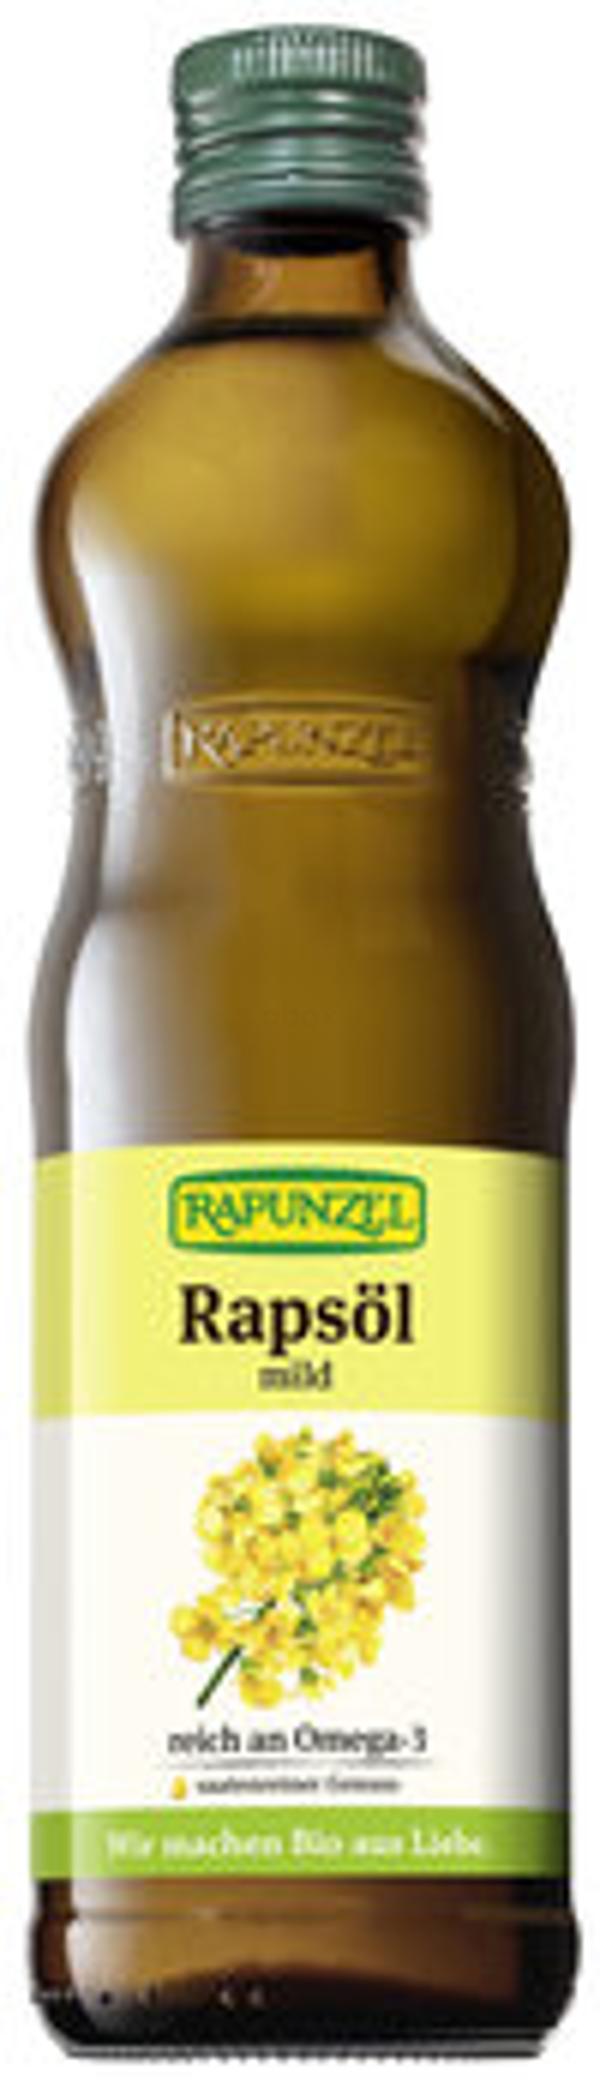 Produktfoto zu Rapsöl mild, 0,5 l